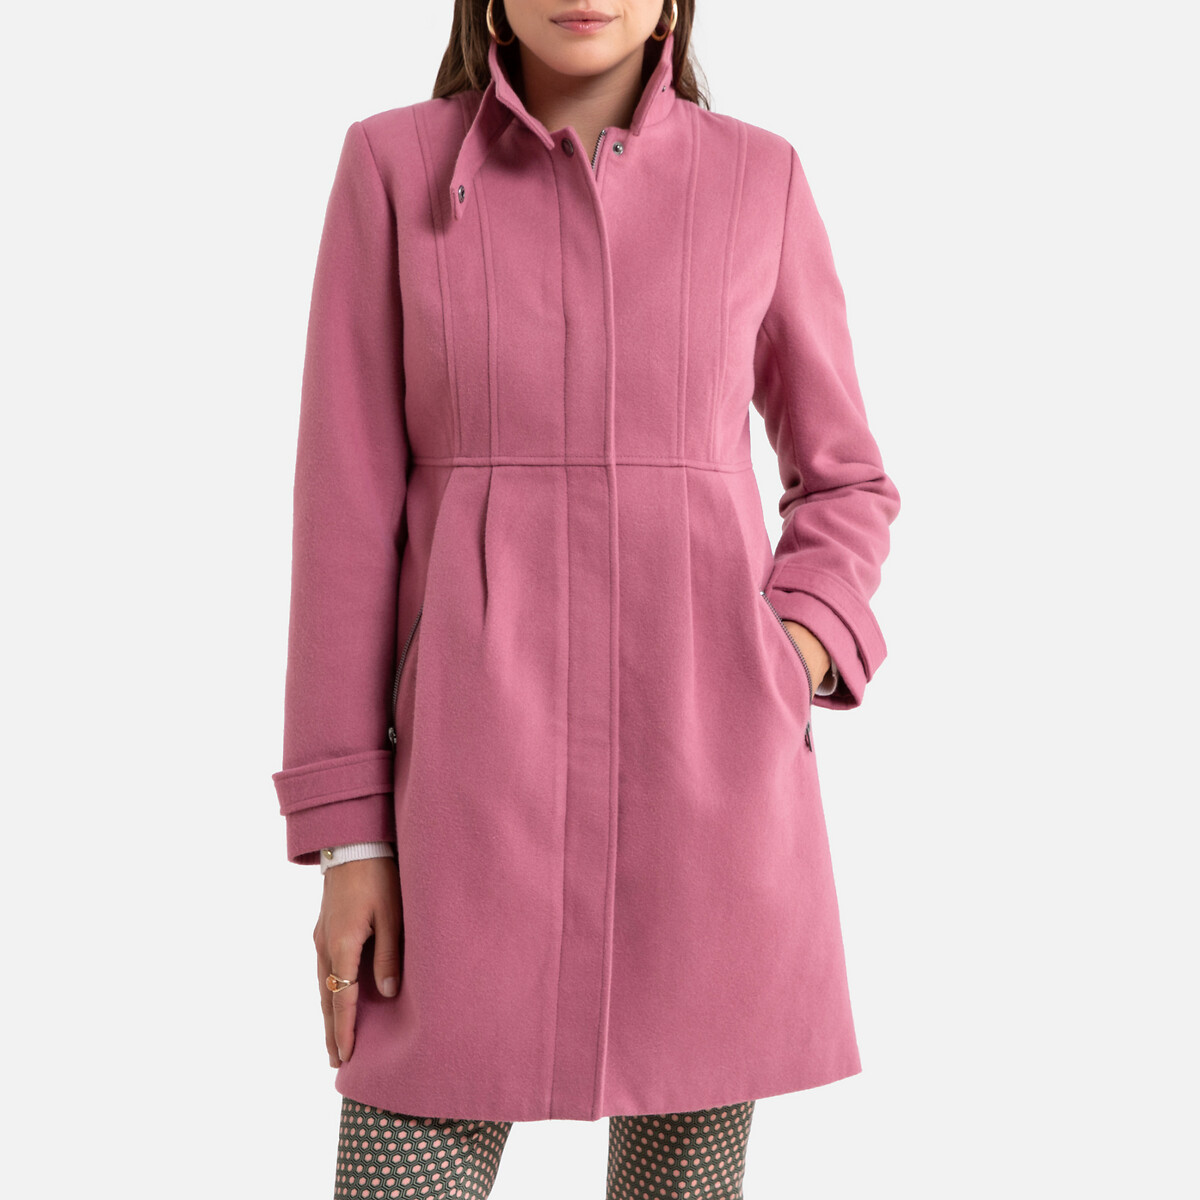 Пальто La Redoute Средней длины с застежкой на молнию 38 (FR) - 44 (RUS) розовый, размер 38 (FR) - 44 (RUS) Средней длины с застежкой на молнию 38 (FR) - 44 (RUS) розовый - фото 1